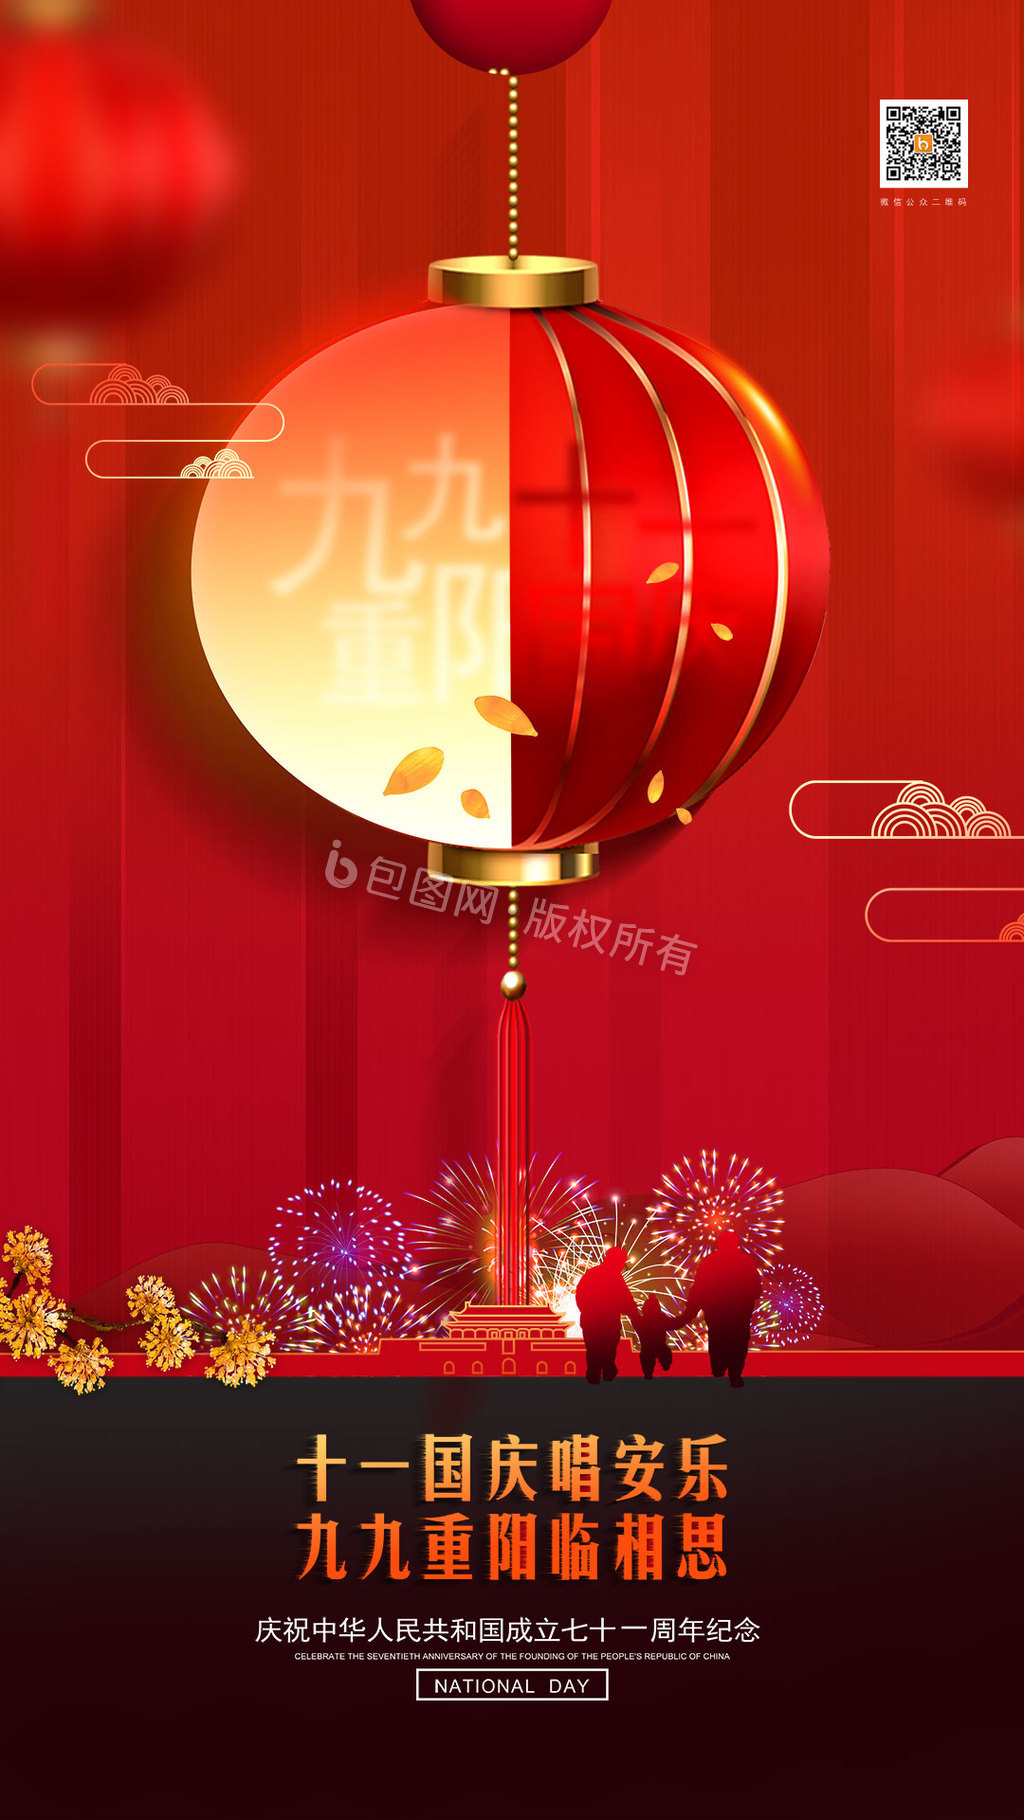 创意国庆重阳双节节日宣传海报动图GIF图片